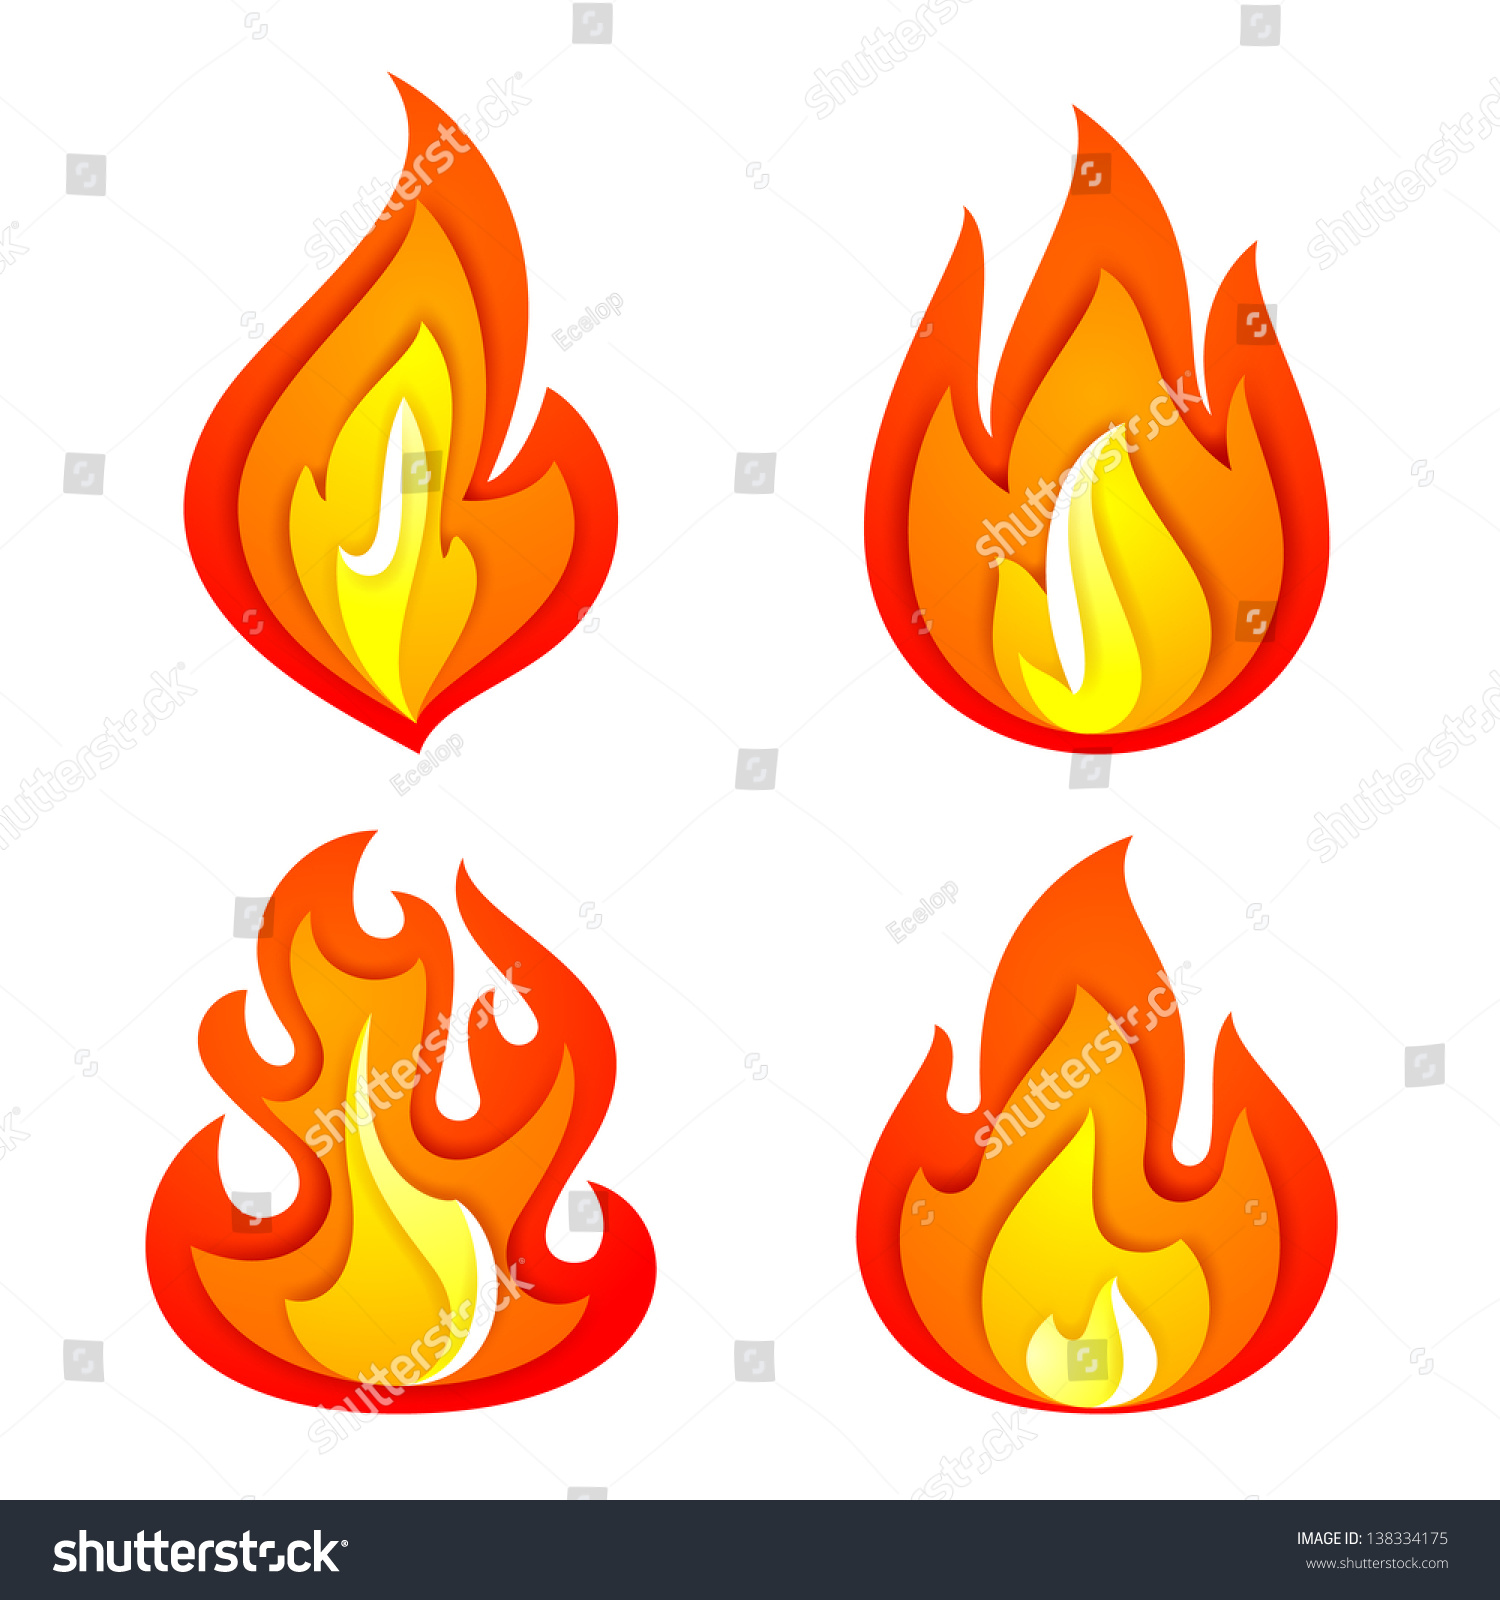 clip art fire flames symbol - photo #48